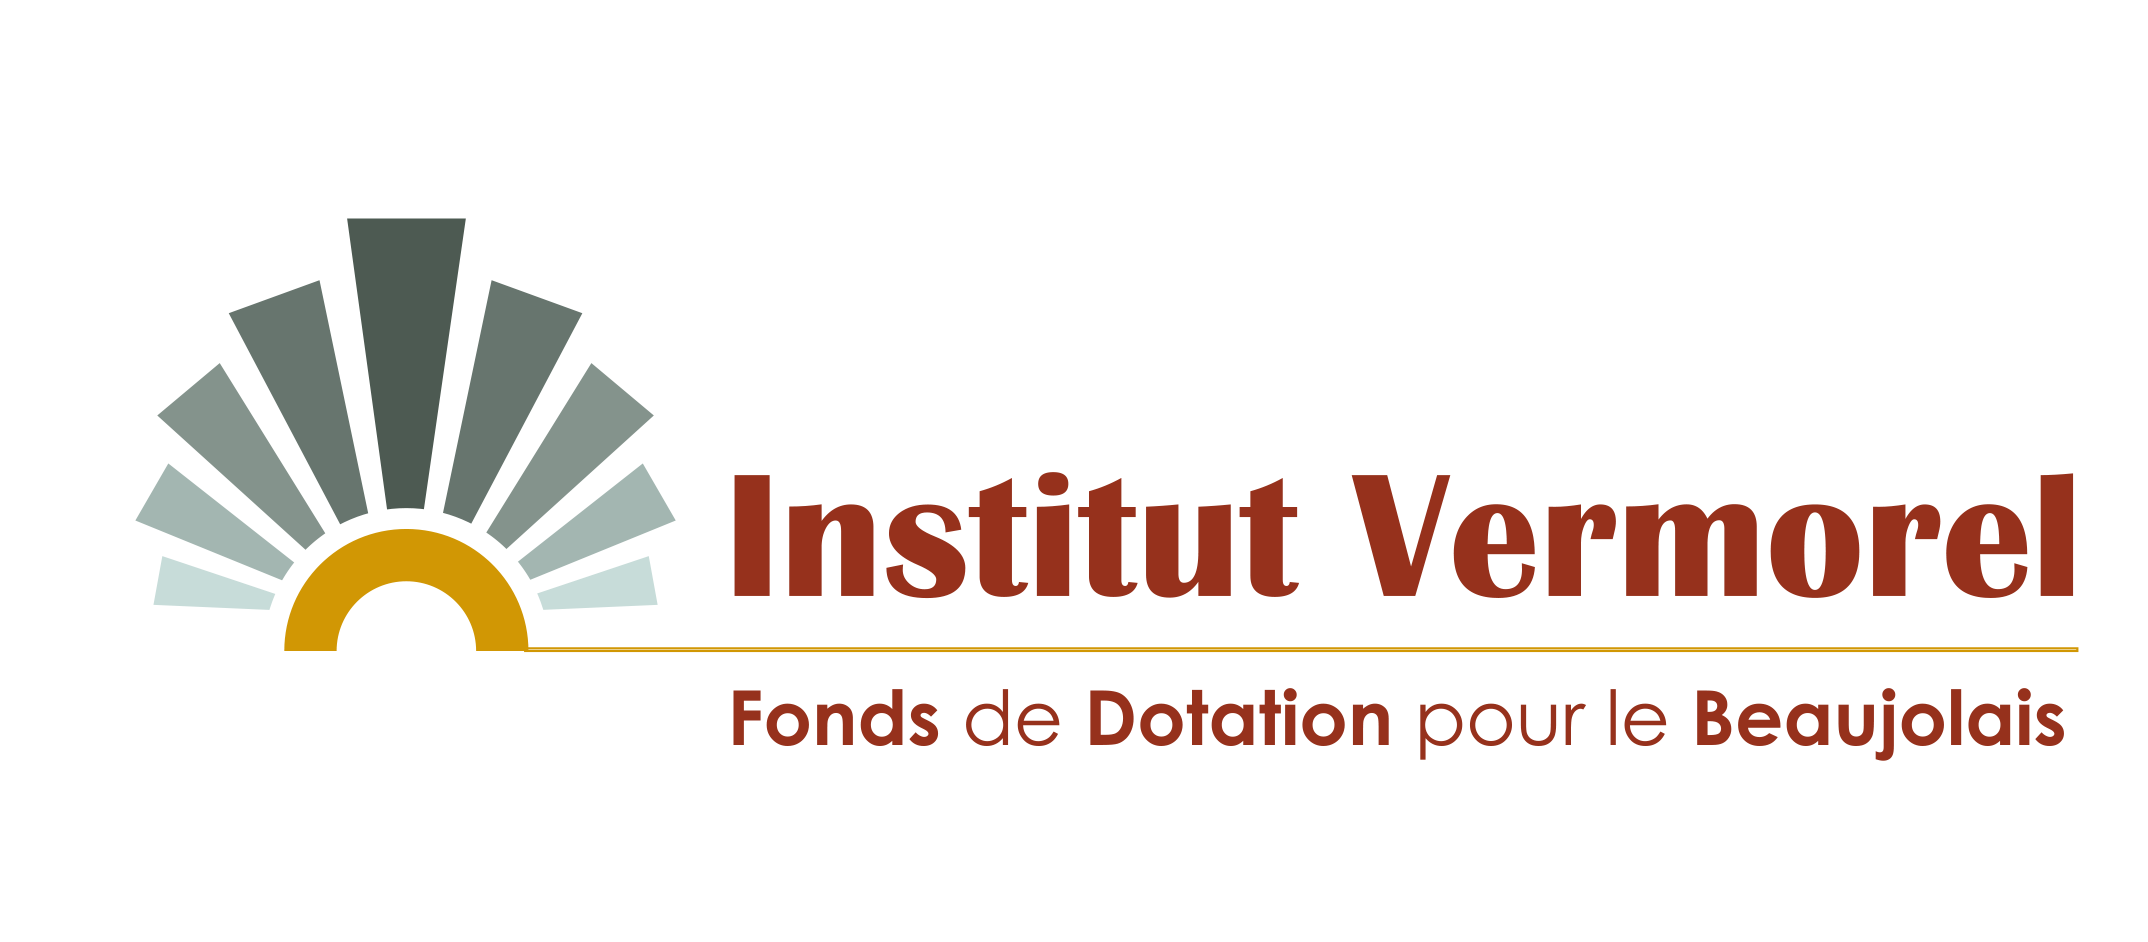 190805-InstitutVermorel-Logo-VF-01082019-02